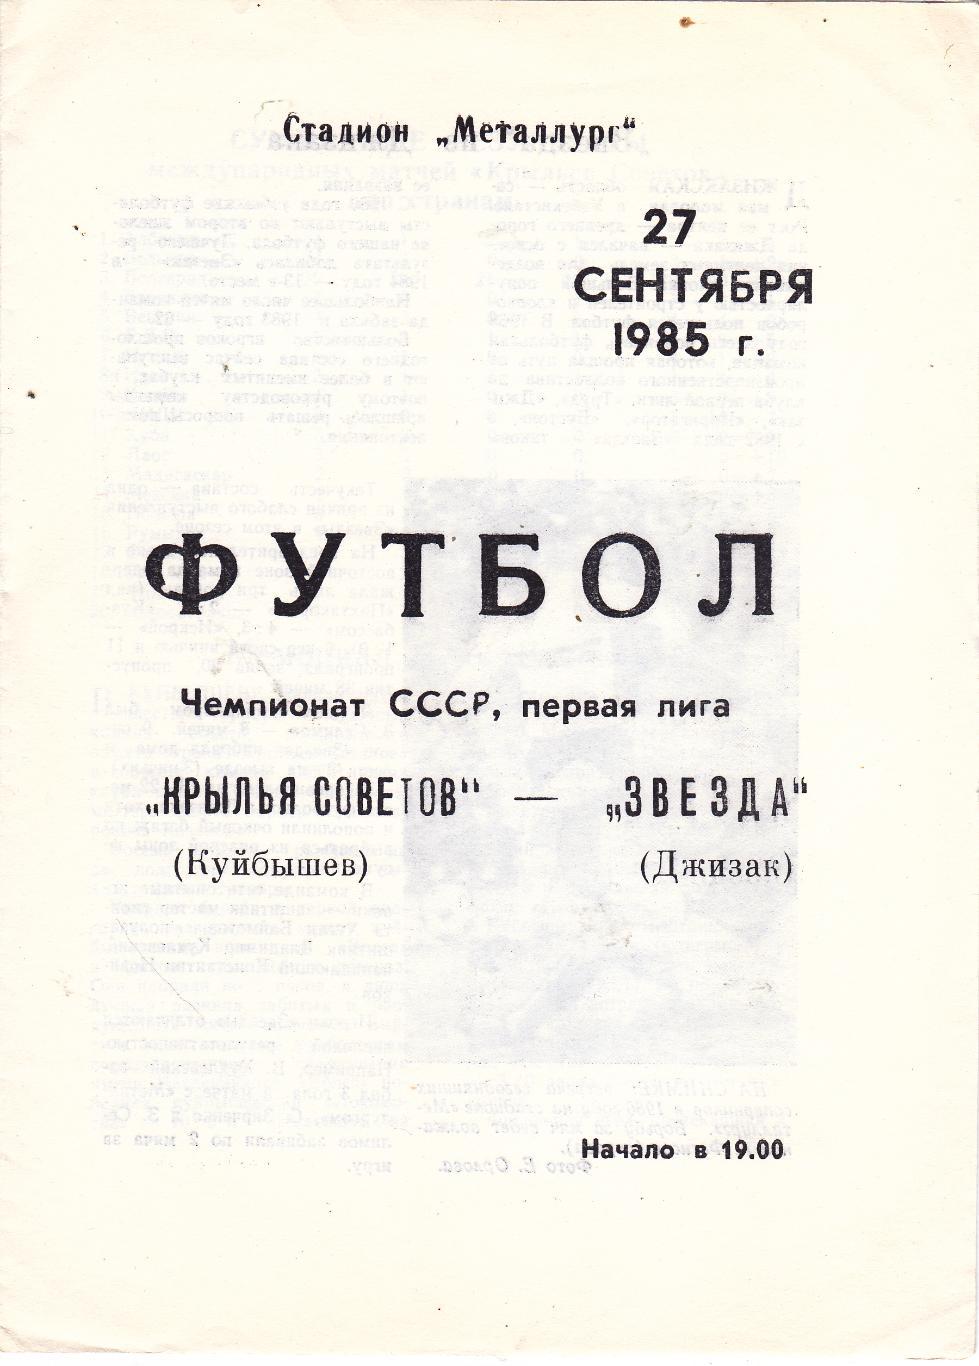 Крылья Советов (Куйбышев) - Звезда (Джизак) 27.09.1985